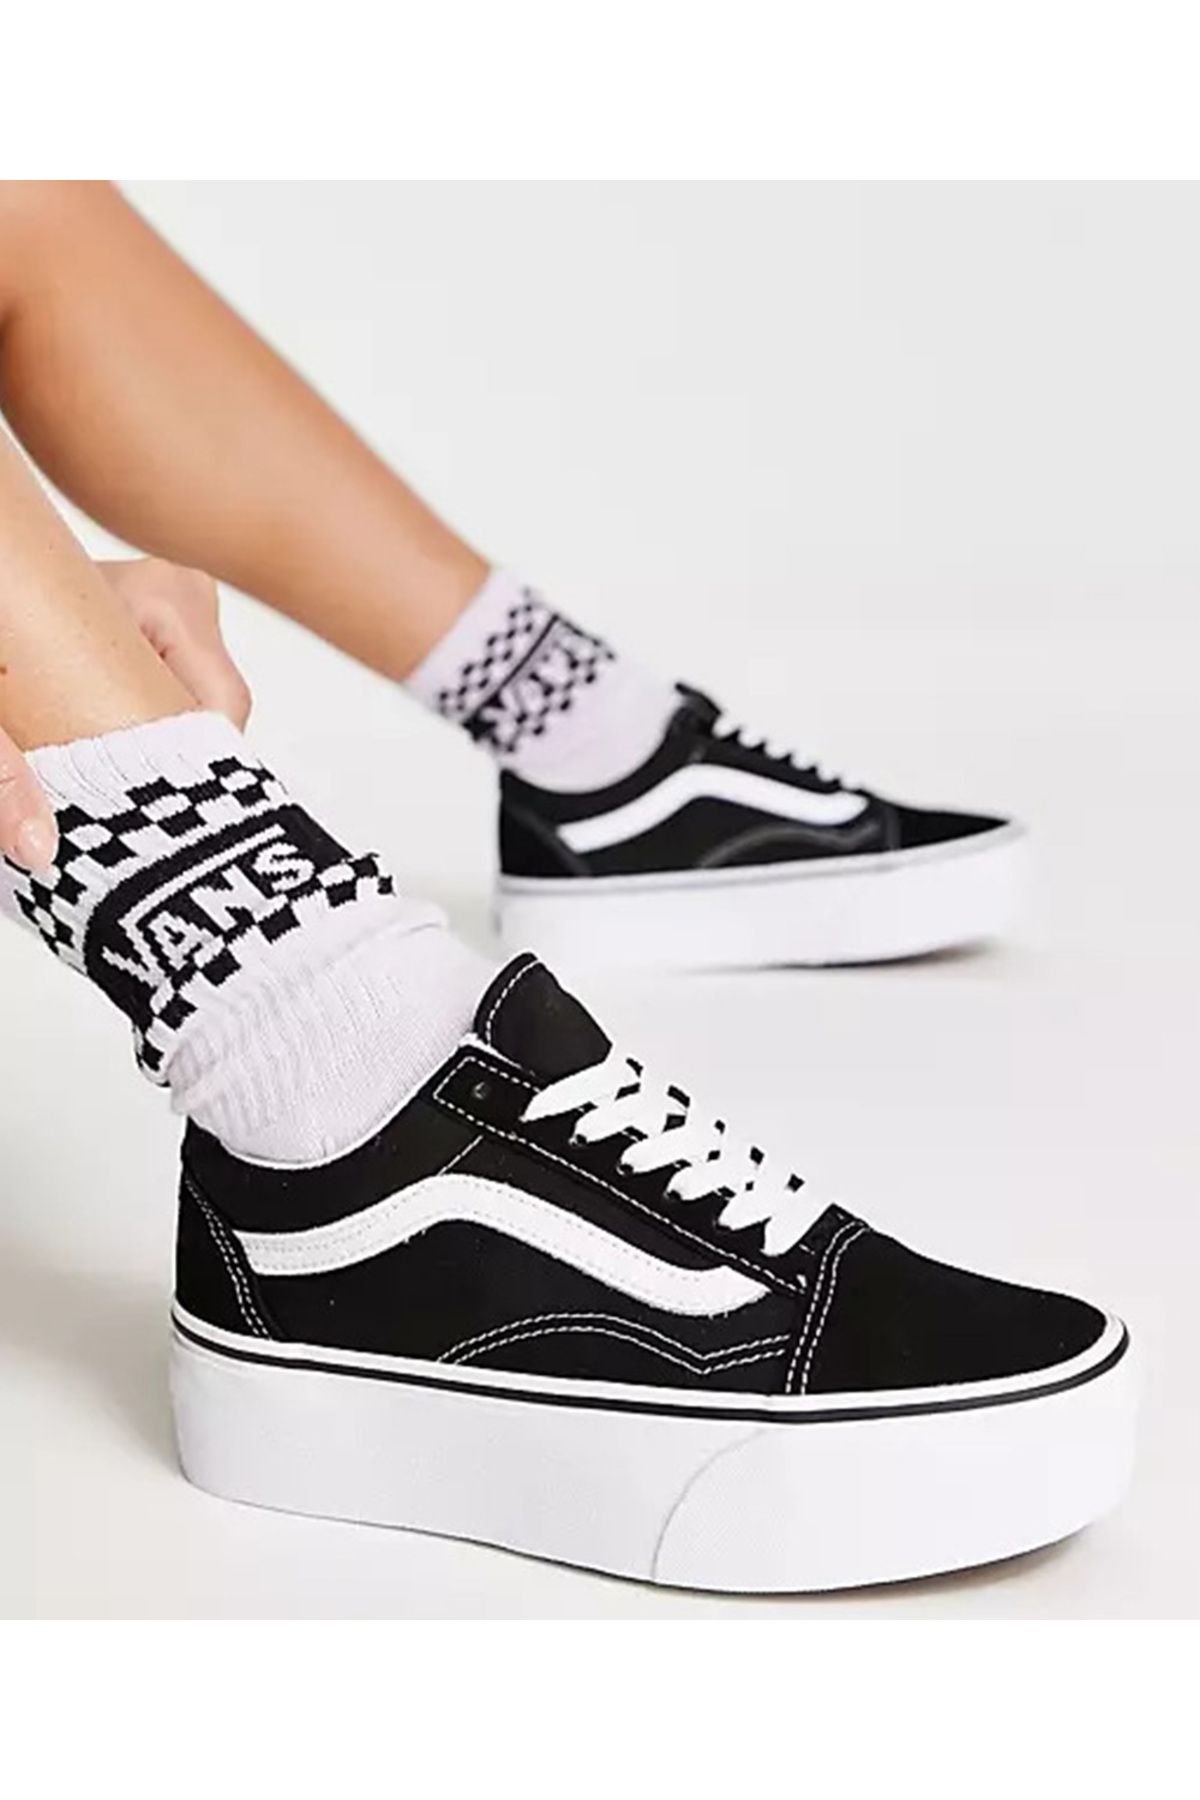 Vans Ua Old Skool Stackform Kadın Yüksek Topuk Günlük Ayakkabı Sneaker Siyah